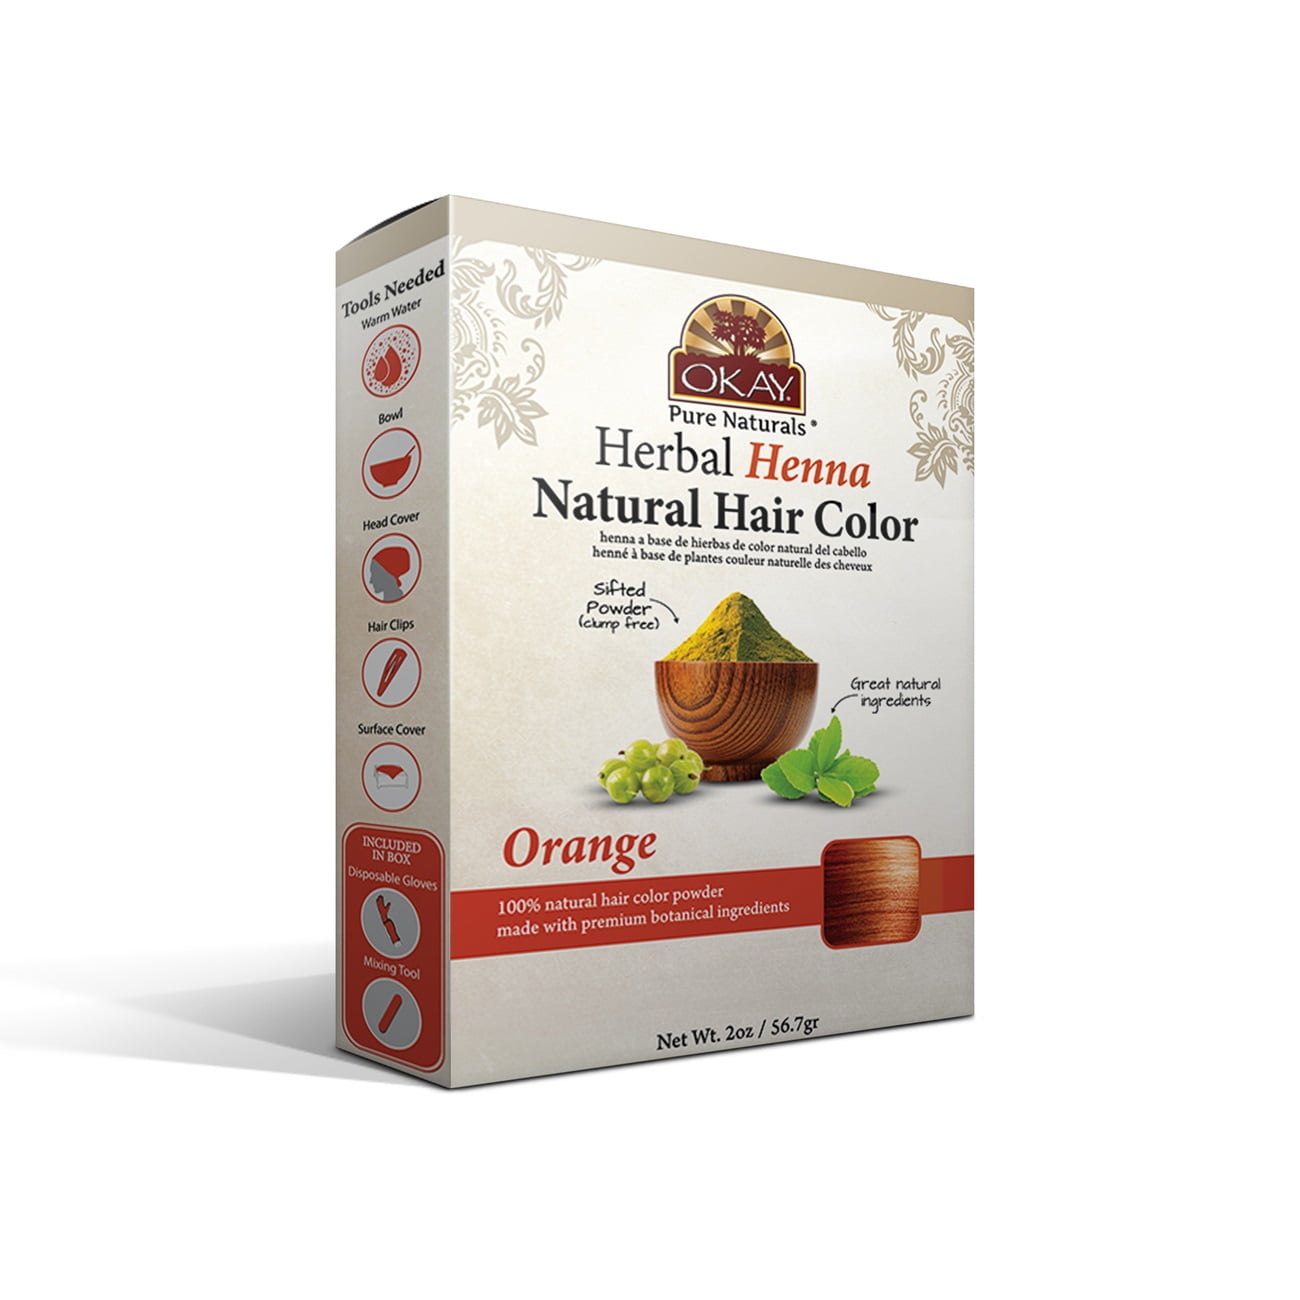 Okay Herbal Henna Natural Hair Color Orange 2 Oz.,Pack of 3 